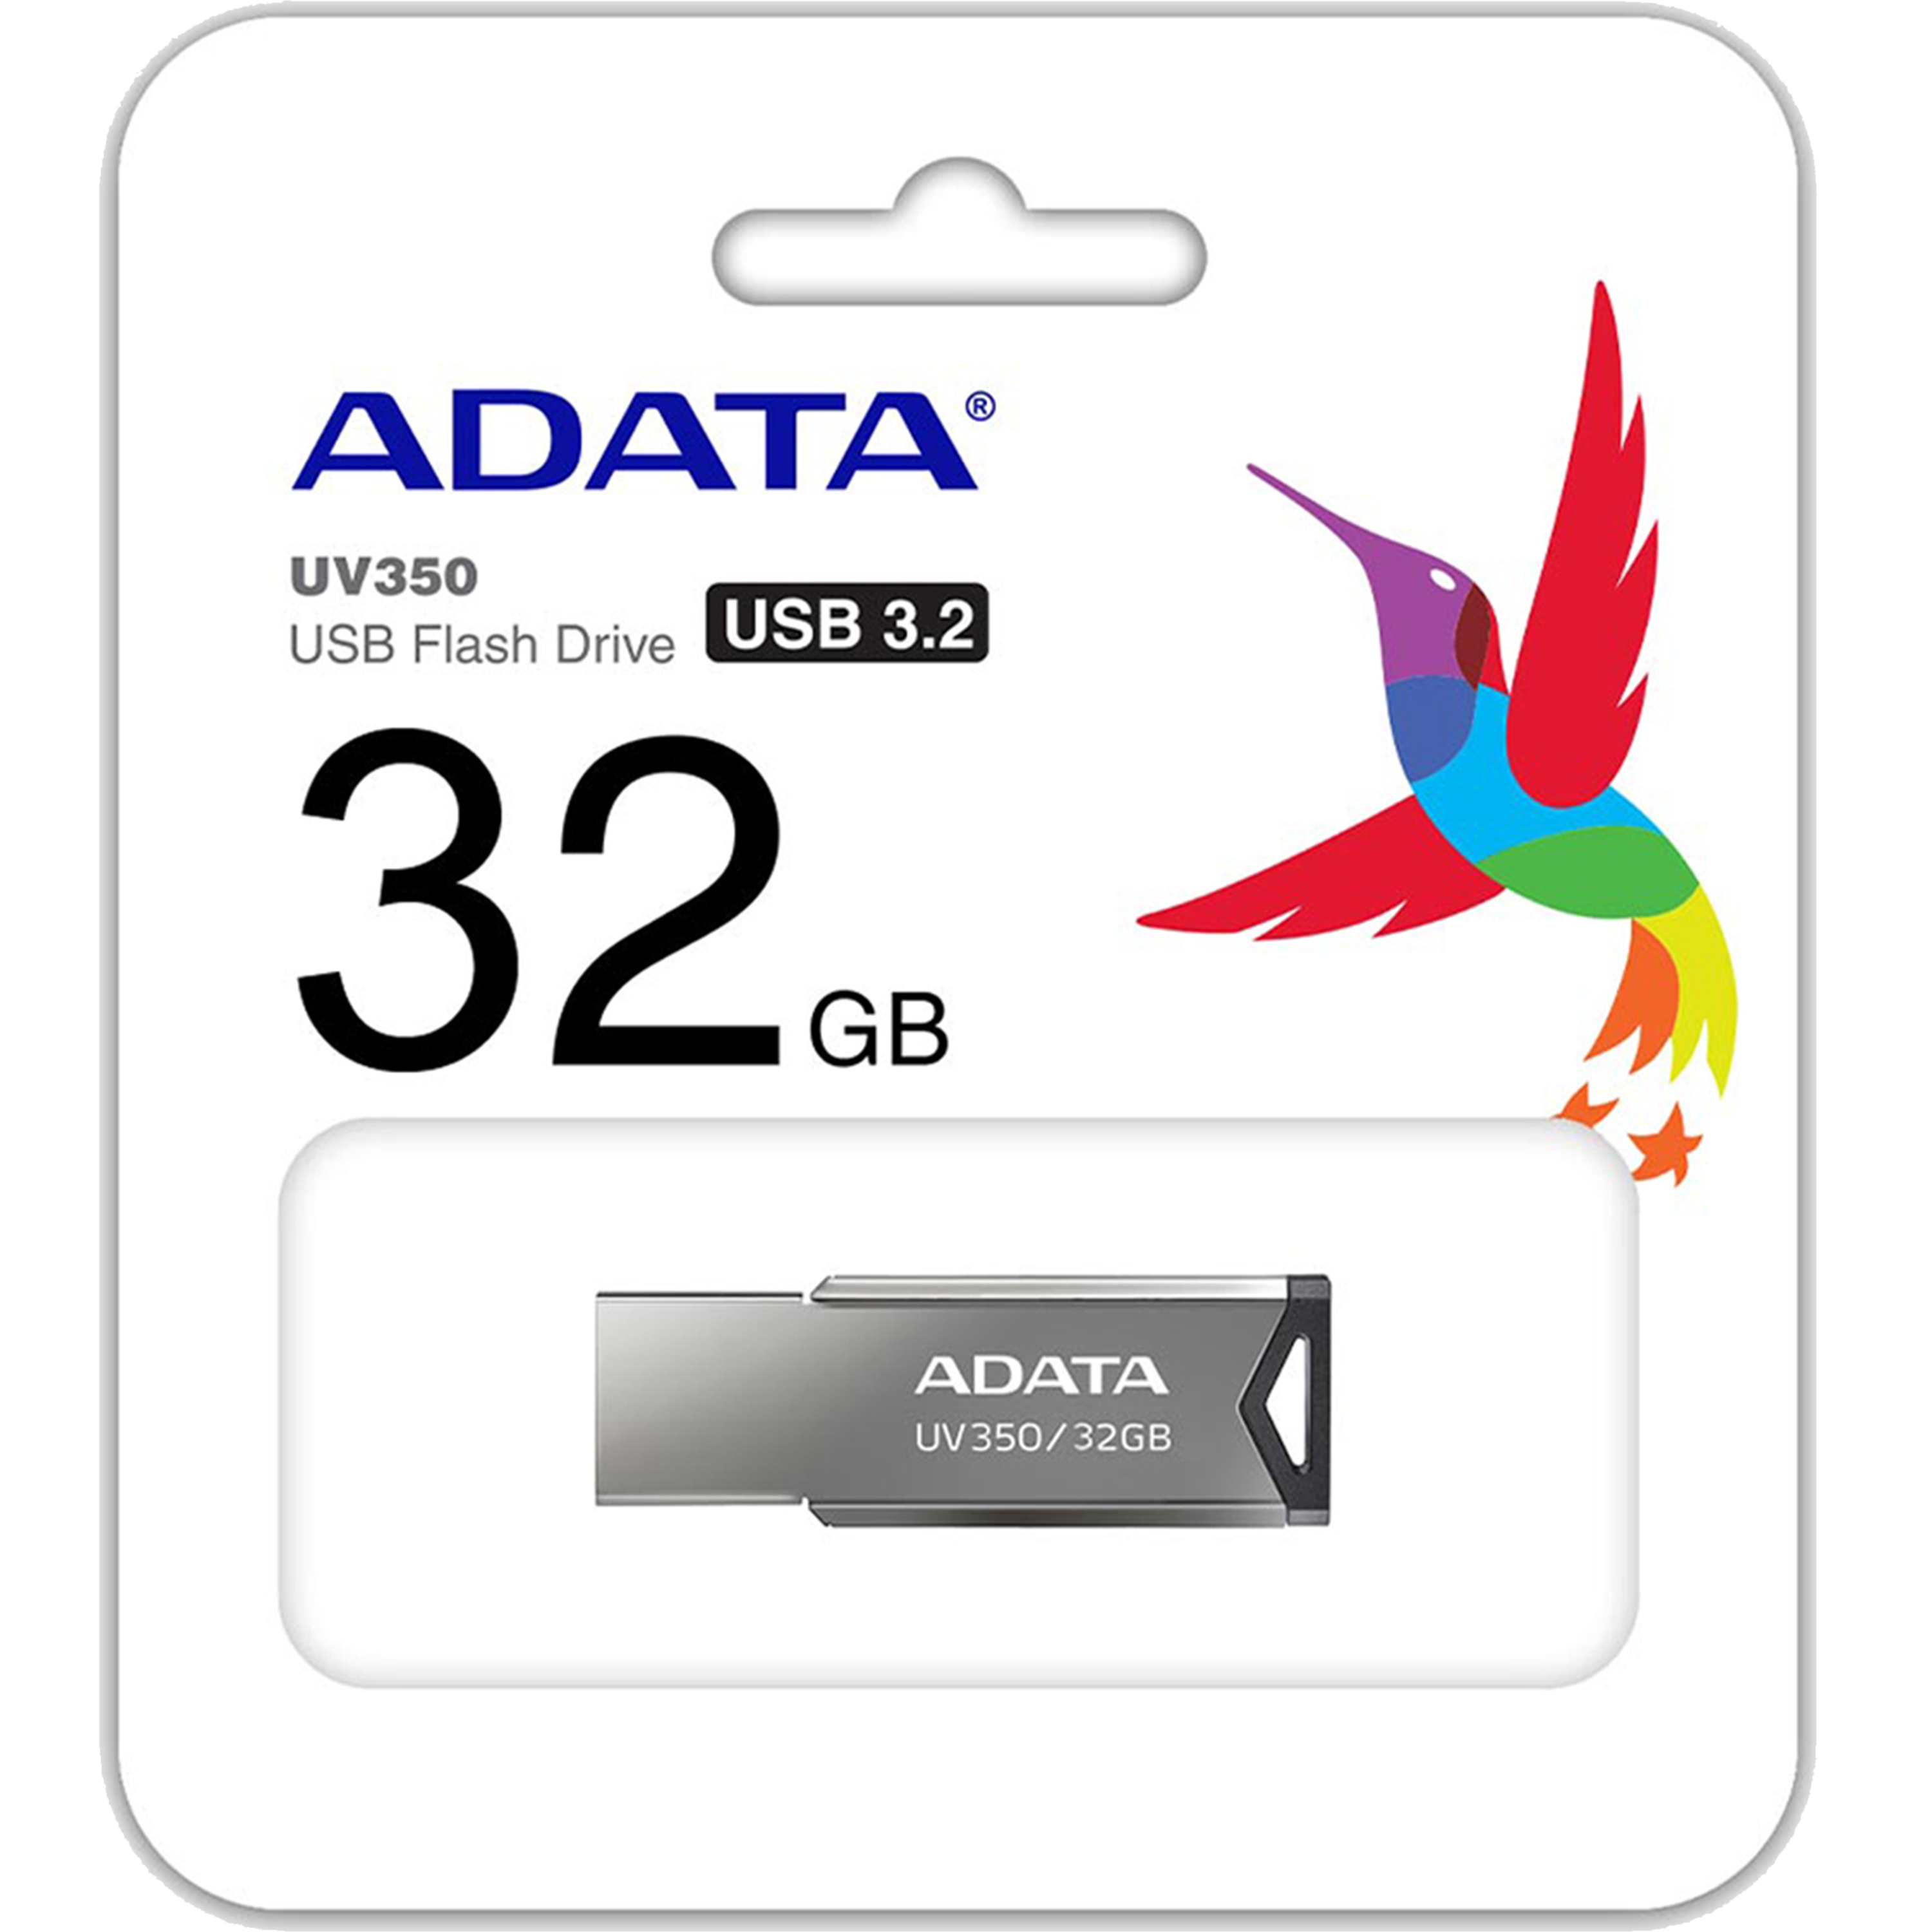 דיסק און קי ADATA USB 3.2 Flash Drive UV350 32GB - צבע כסף חמש שנות אחריות ע